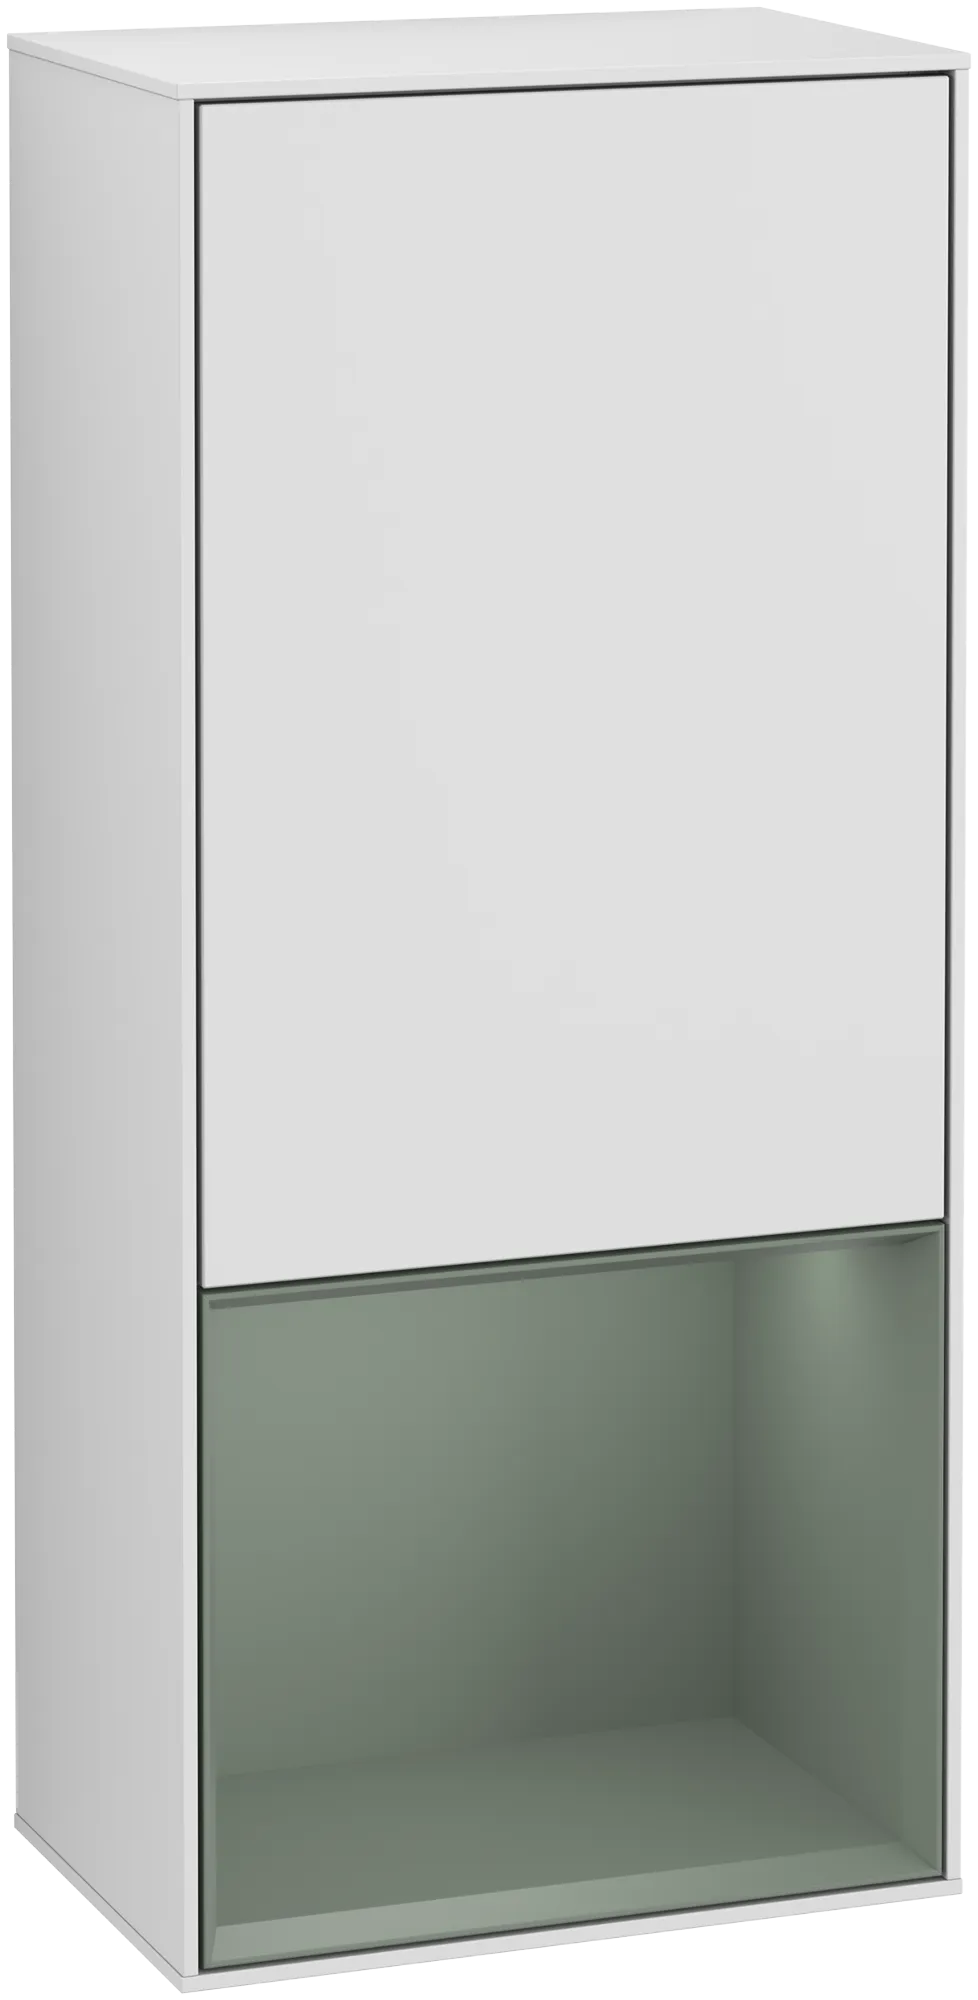 Bild von VILLEROY BOCH Finion Seitenschrank, mit Beleuchtung, 1 Tür, 418 x 936 x 270 mm, White Matt Lacquer / Olive Matt Lacquer #G540GMMT